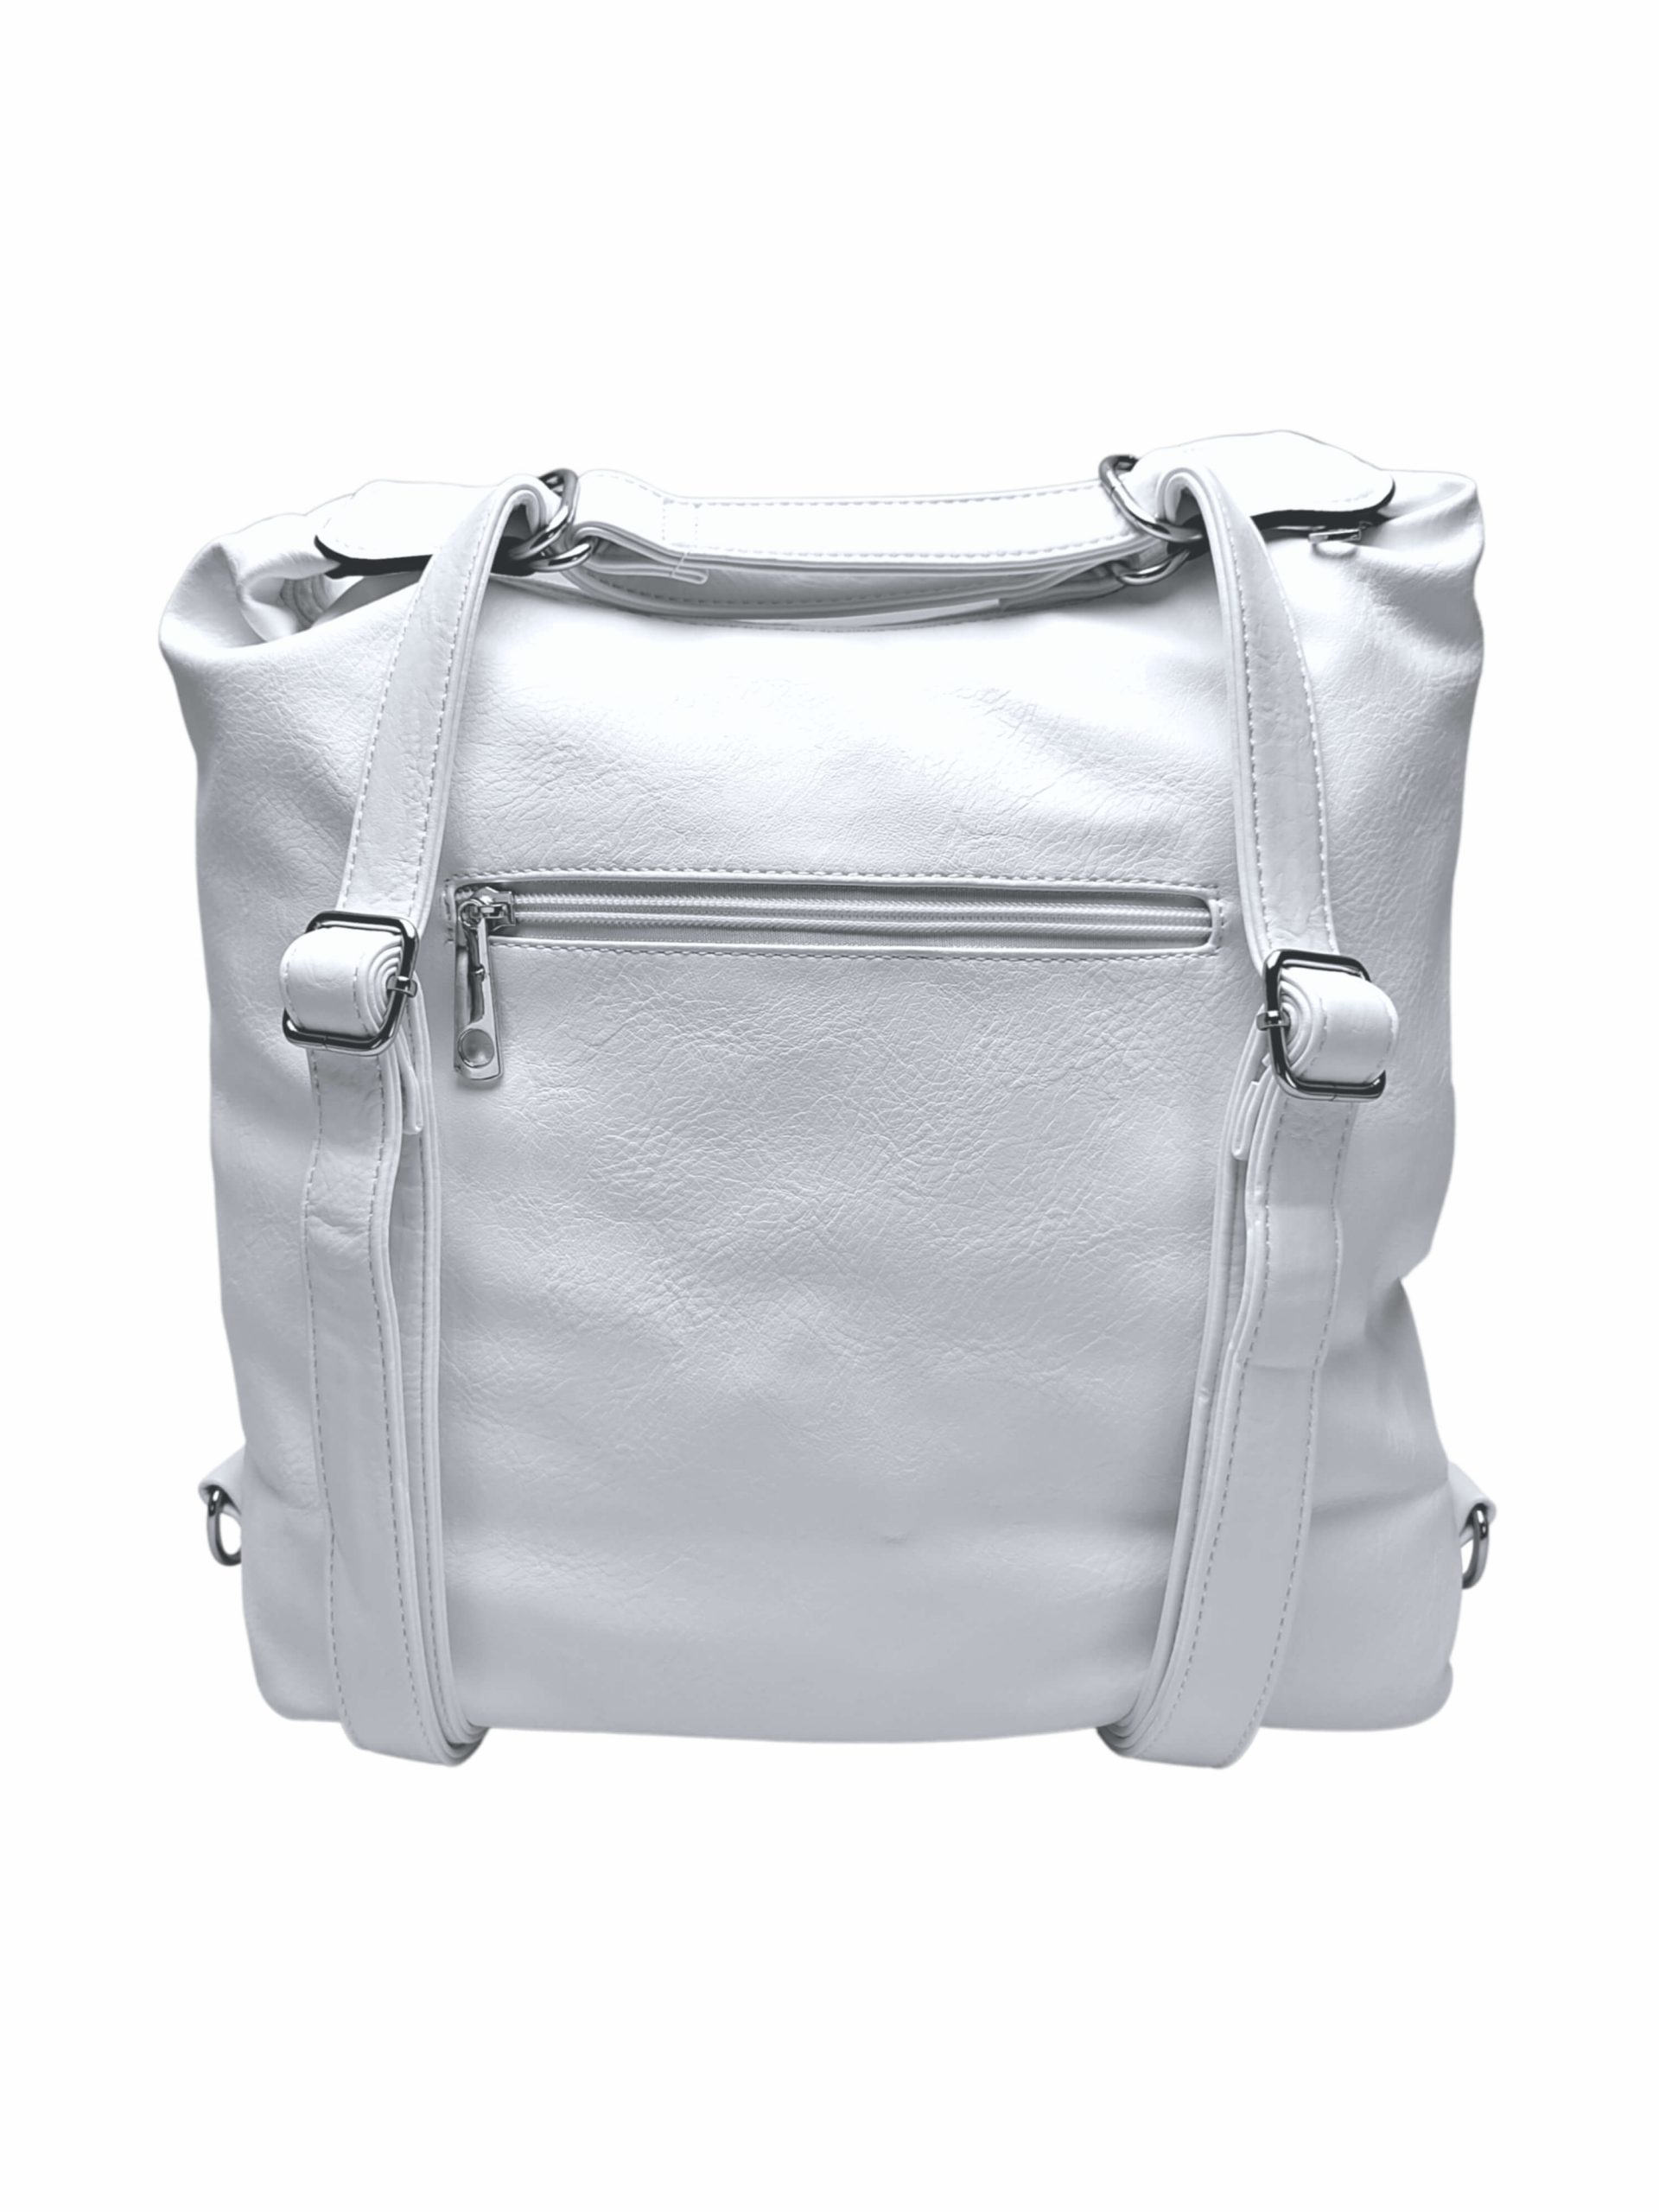 Velký bílý kabelko-batoh z eko kůže, Tapple, H18077, zadní strana kabelko-batohu 2v1 s popruhy